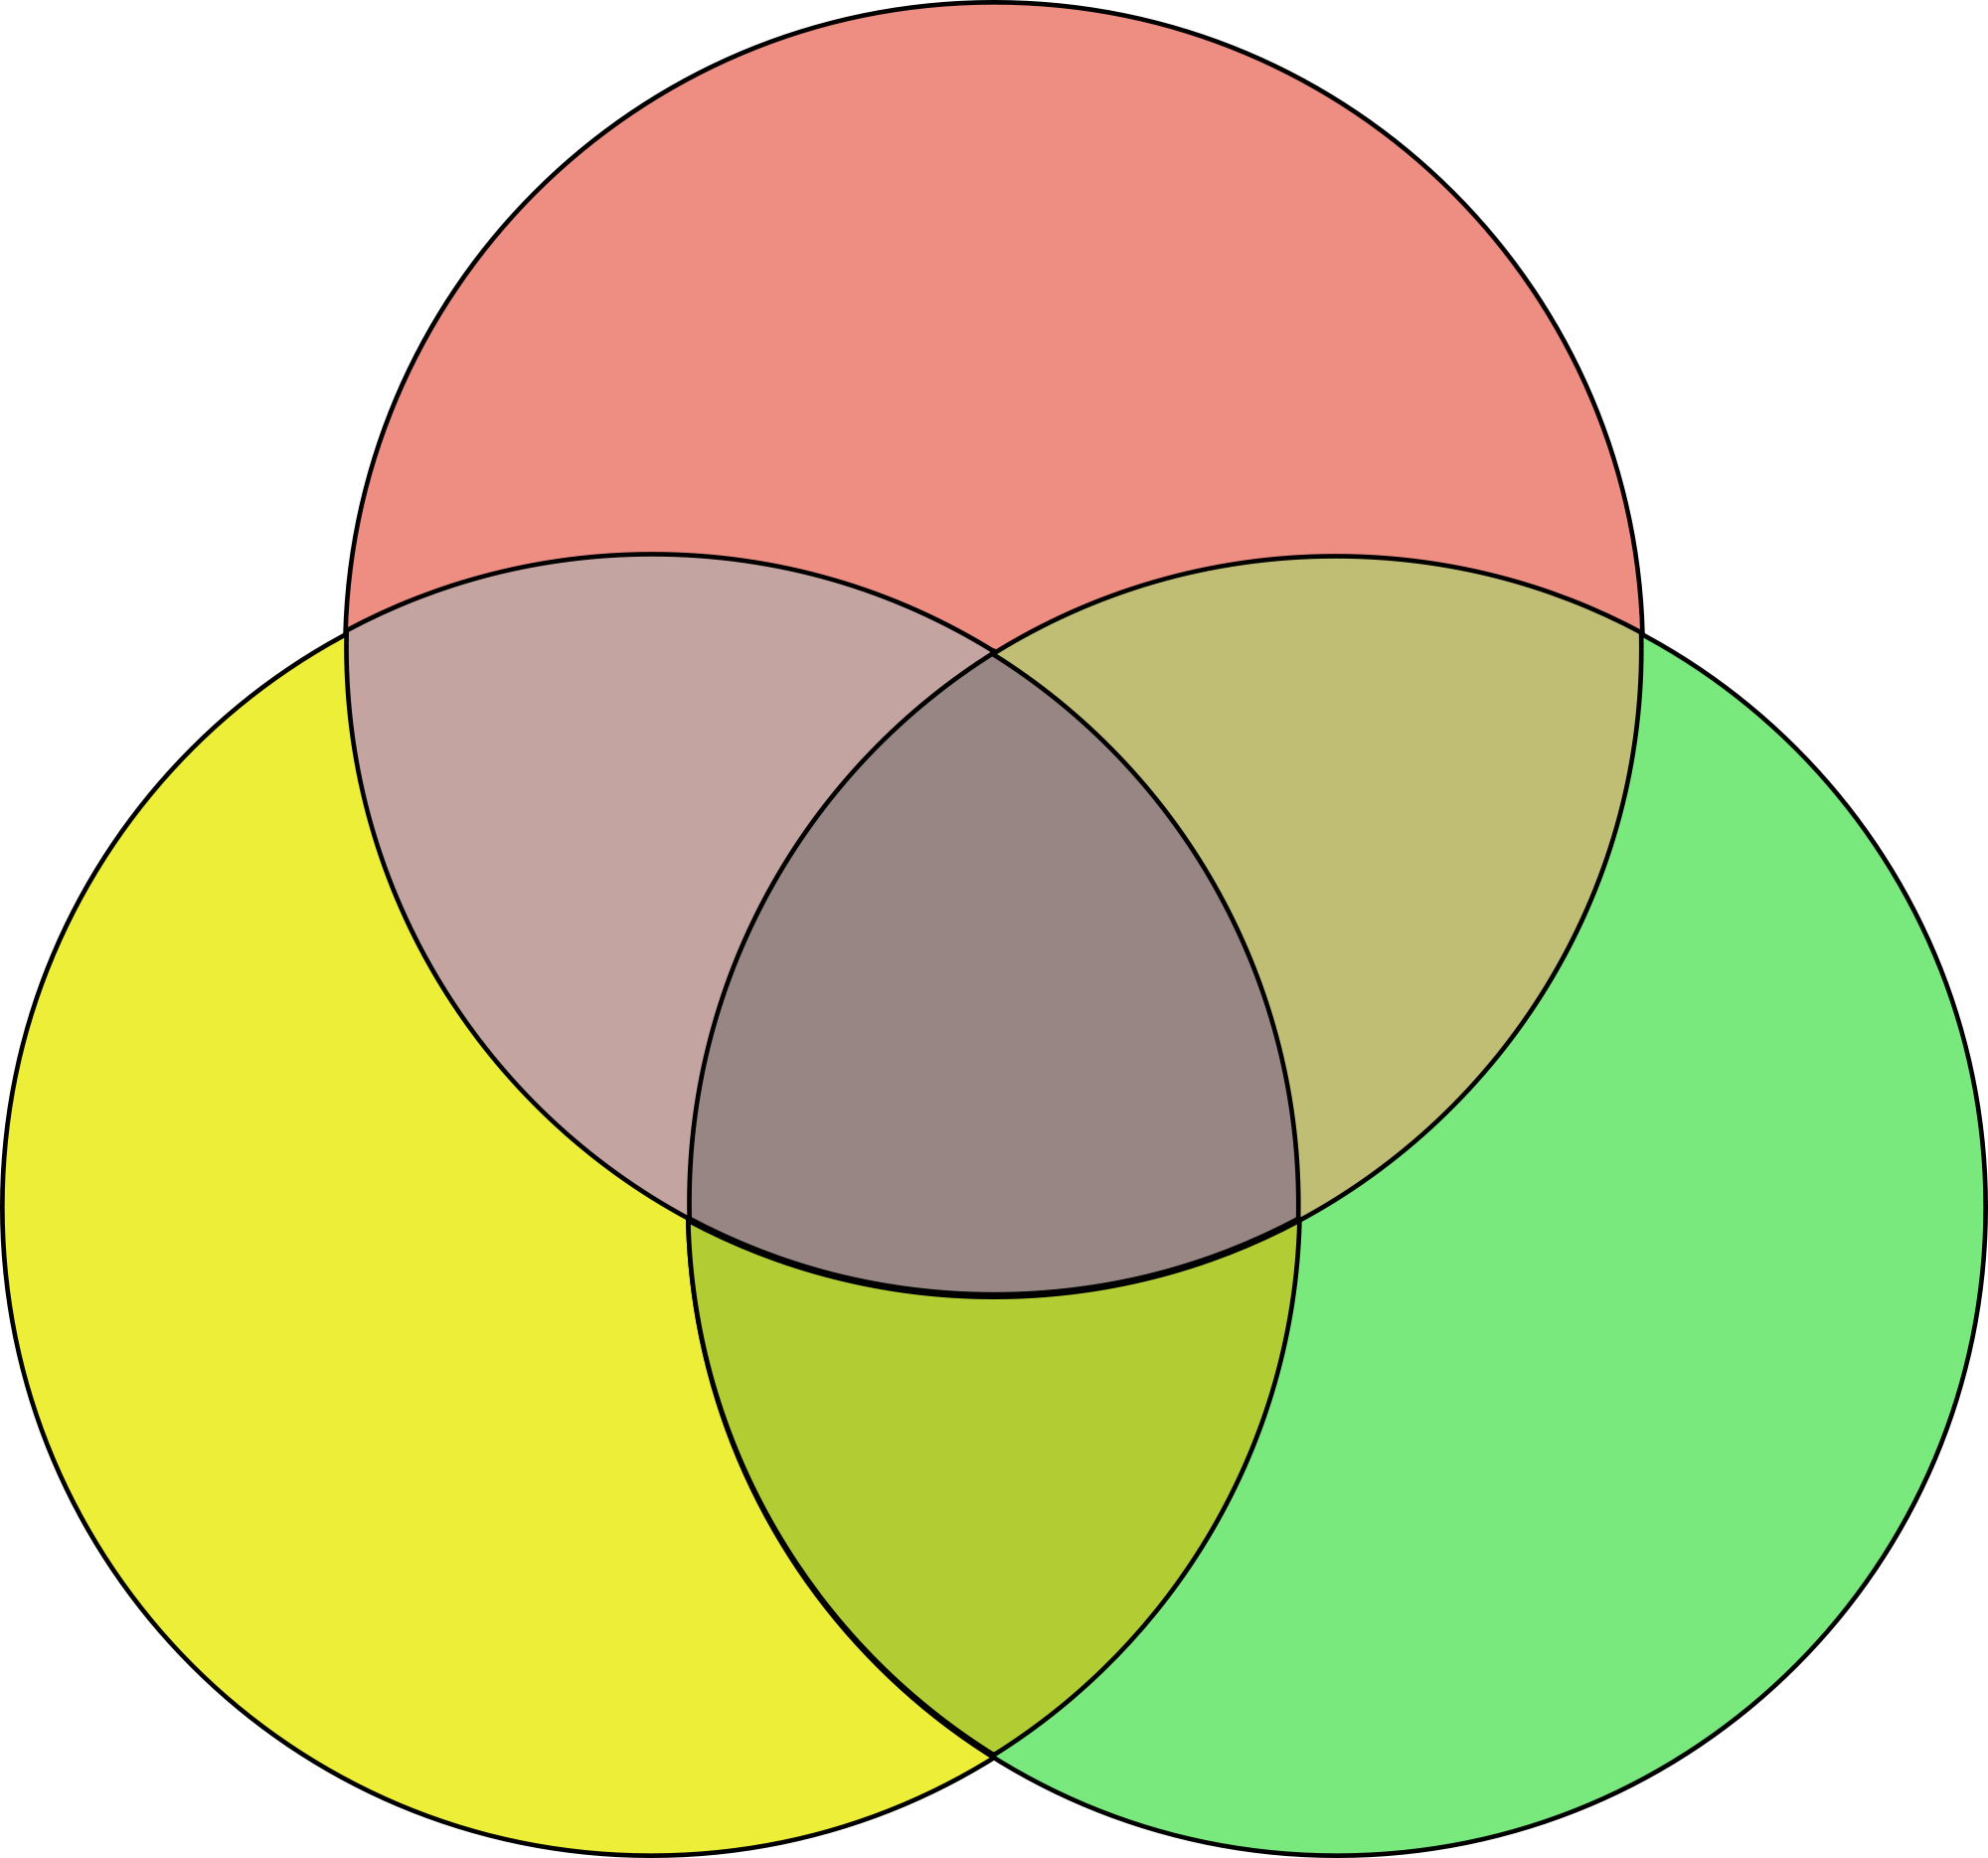 Пересечение 3 кругов. Три круга Эйлера. Диаграмма Эйлера Венна три круга. Диаграмма Венна три круга.